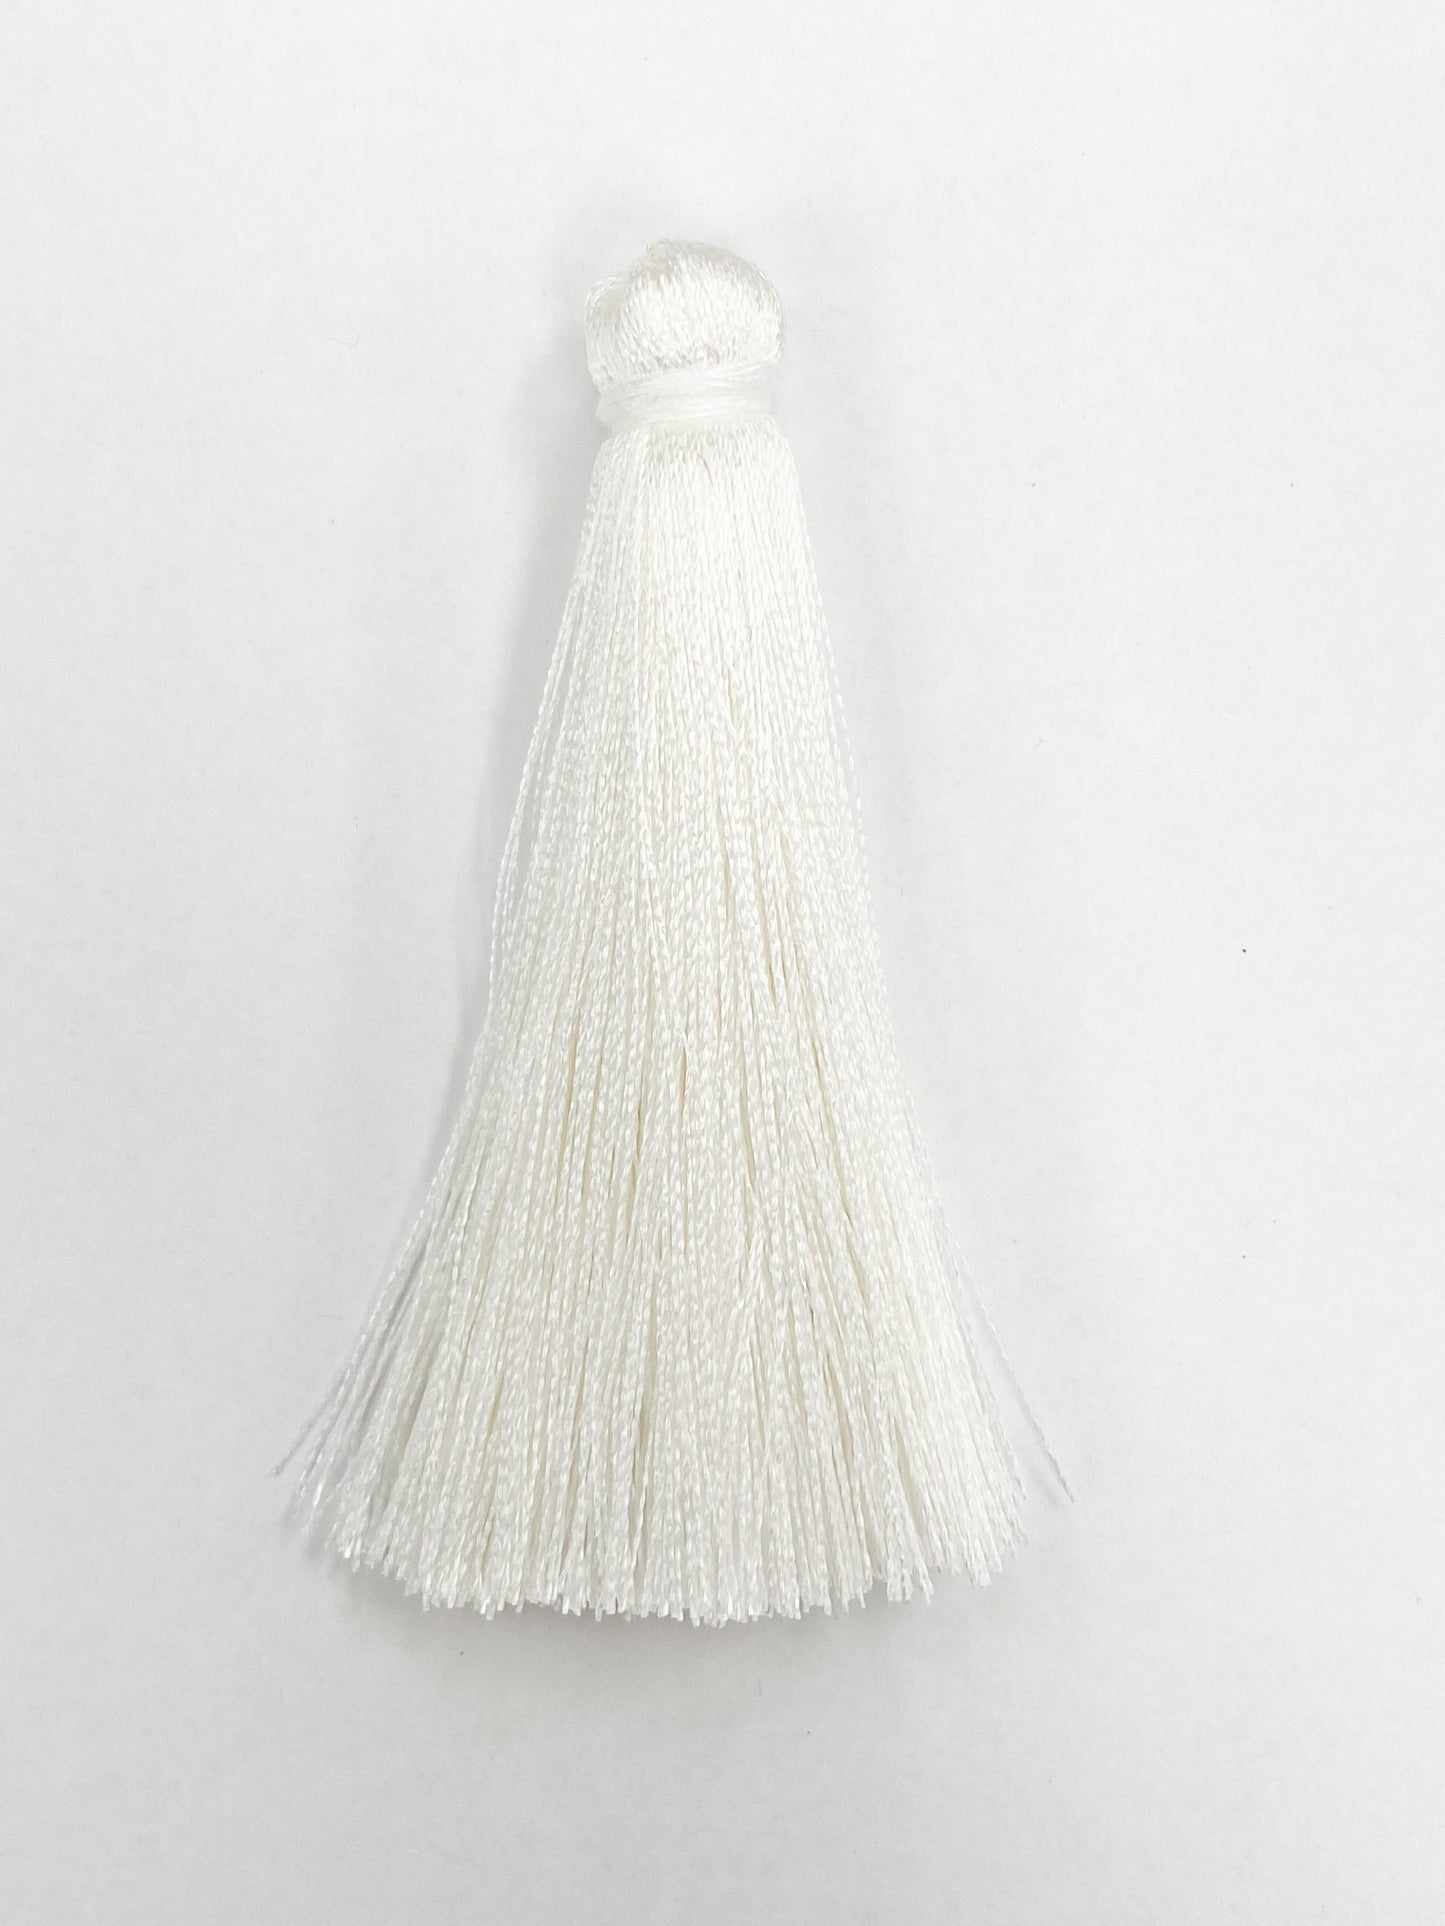 White Coloured Tassel, 65mmL x 10mm. Polyester fibre.